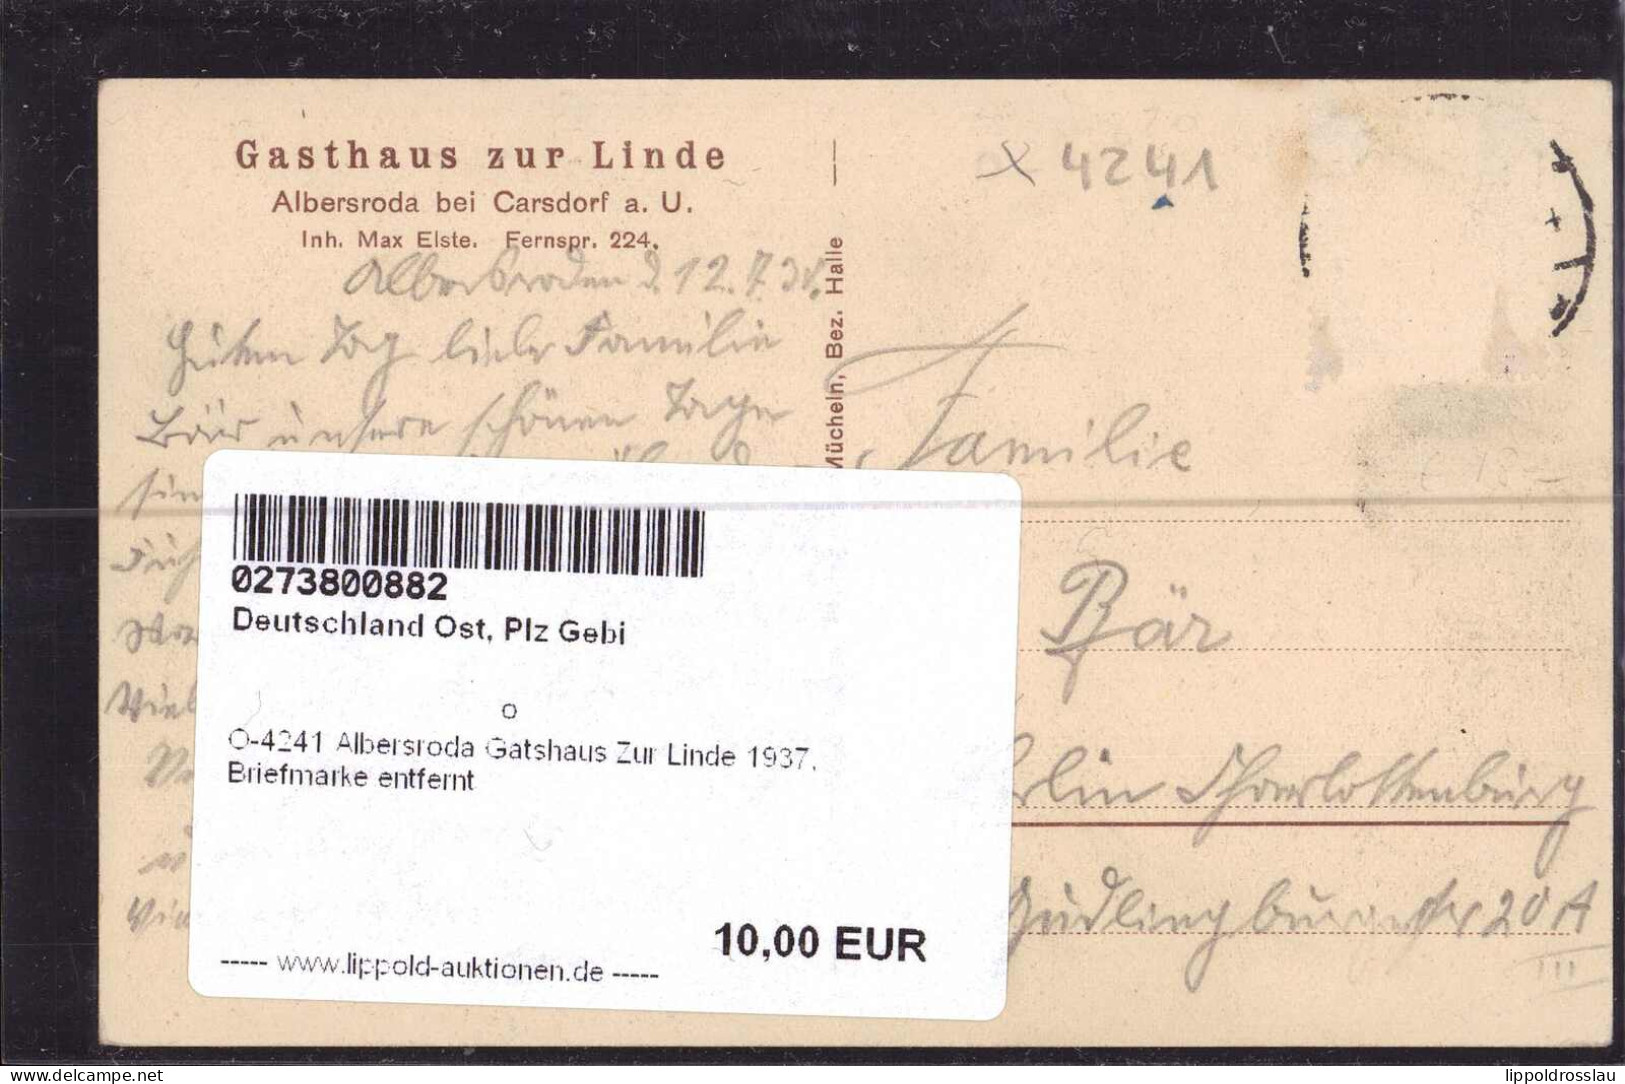 Gest. O-4241 Albersroda Gatshaus Zur Linde 1937, Briefmarke Entfernt - Querfurt